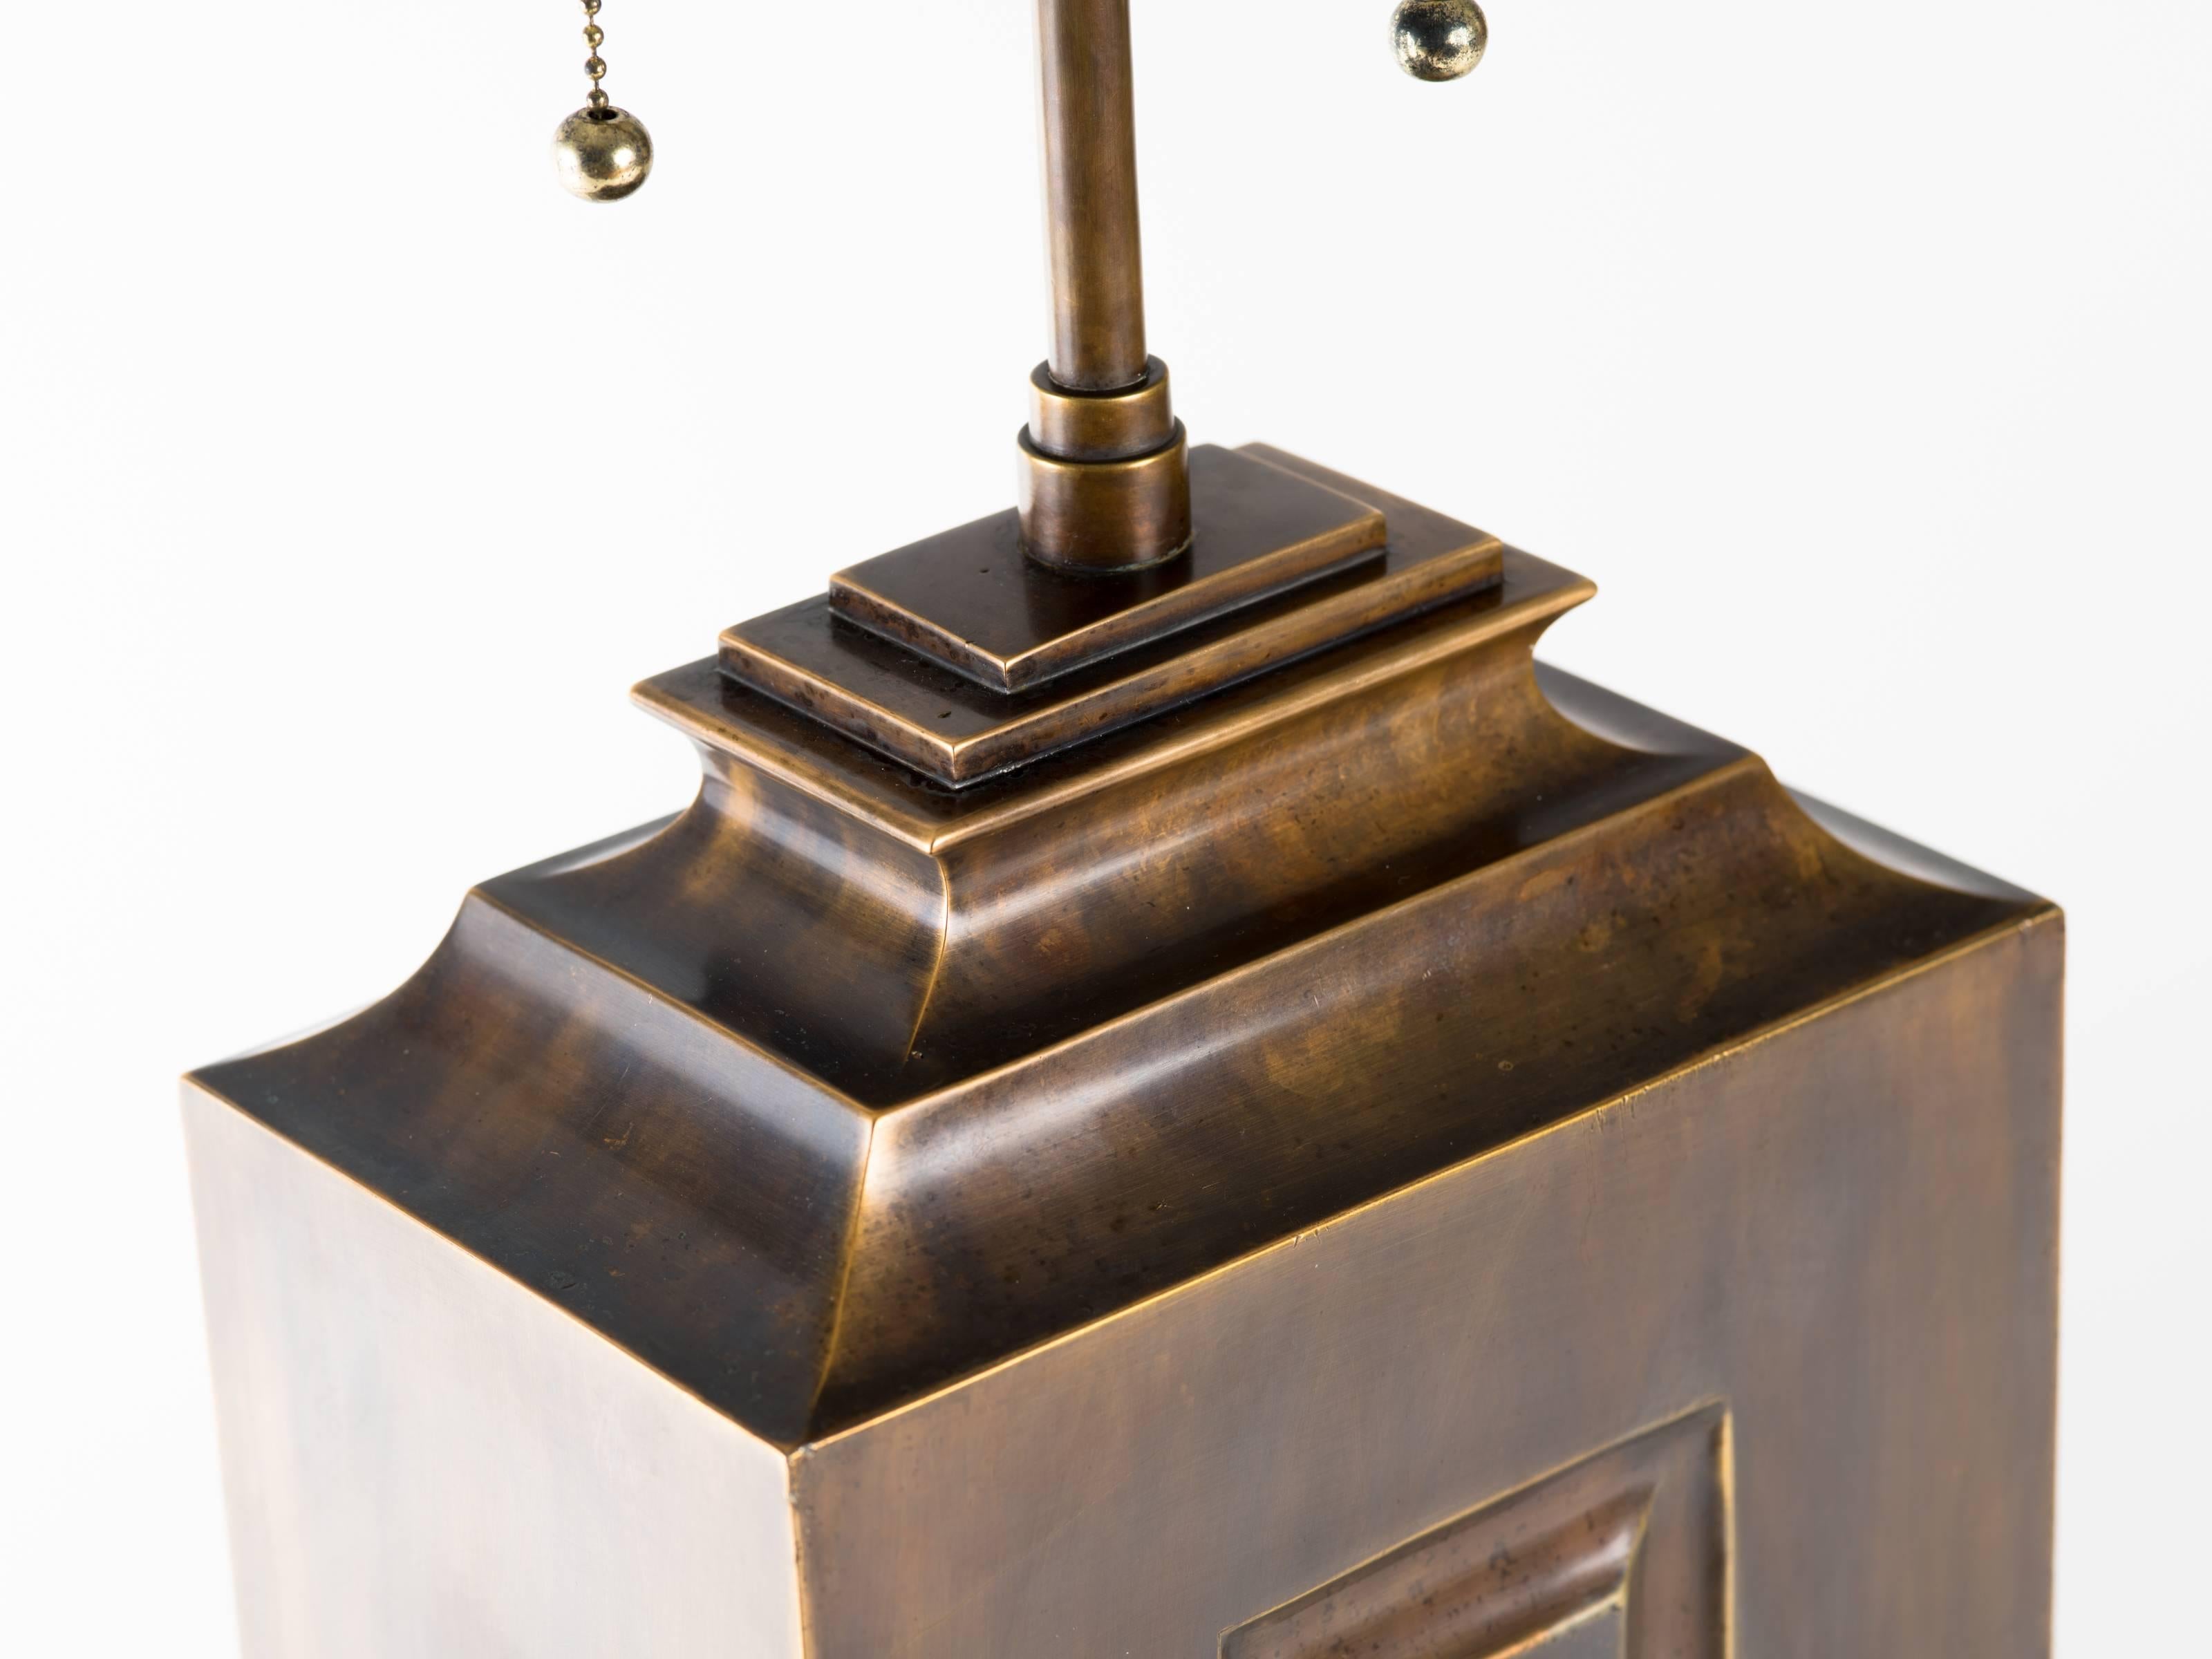 Monumentale lampe Hollywood Regency en laiton patiné. Le corps de la lampe mesure 24,5